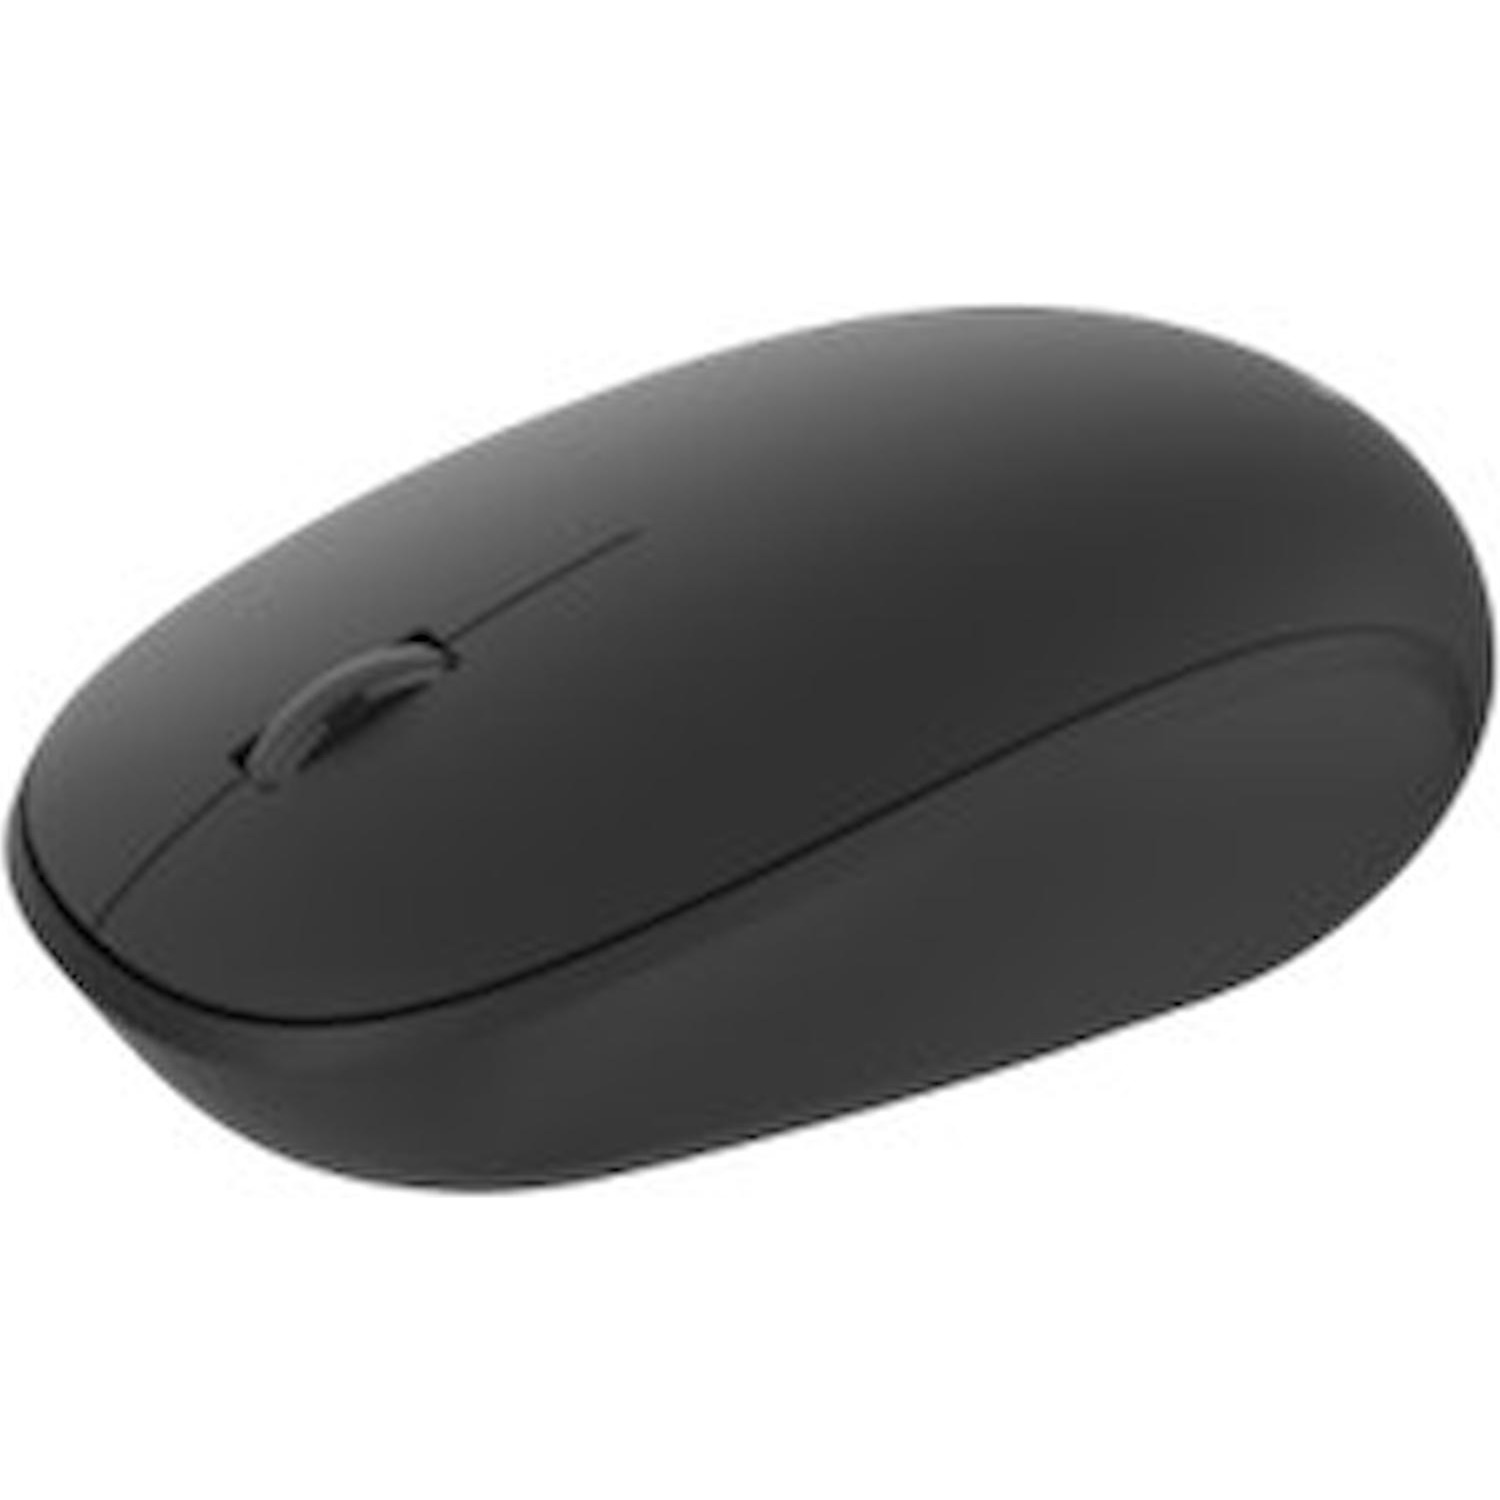 Immagine per Mouse Microsoft LIAONING nero bluetooth da DIMOStore